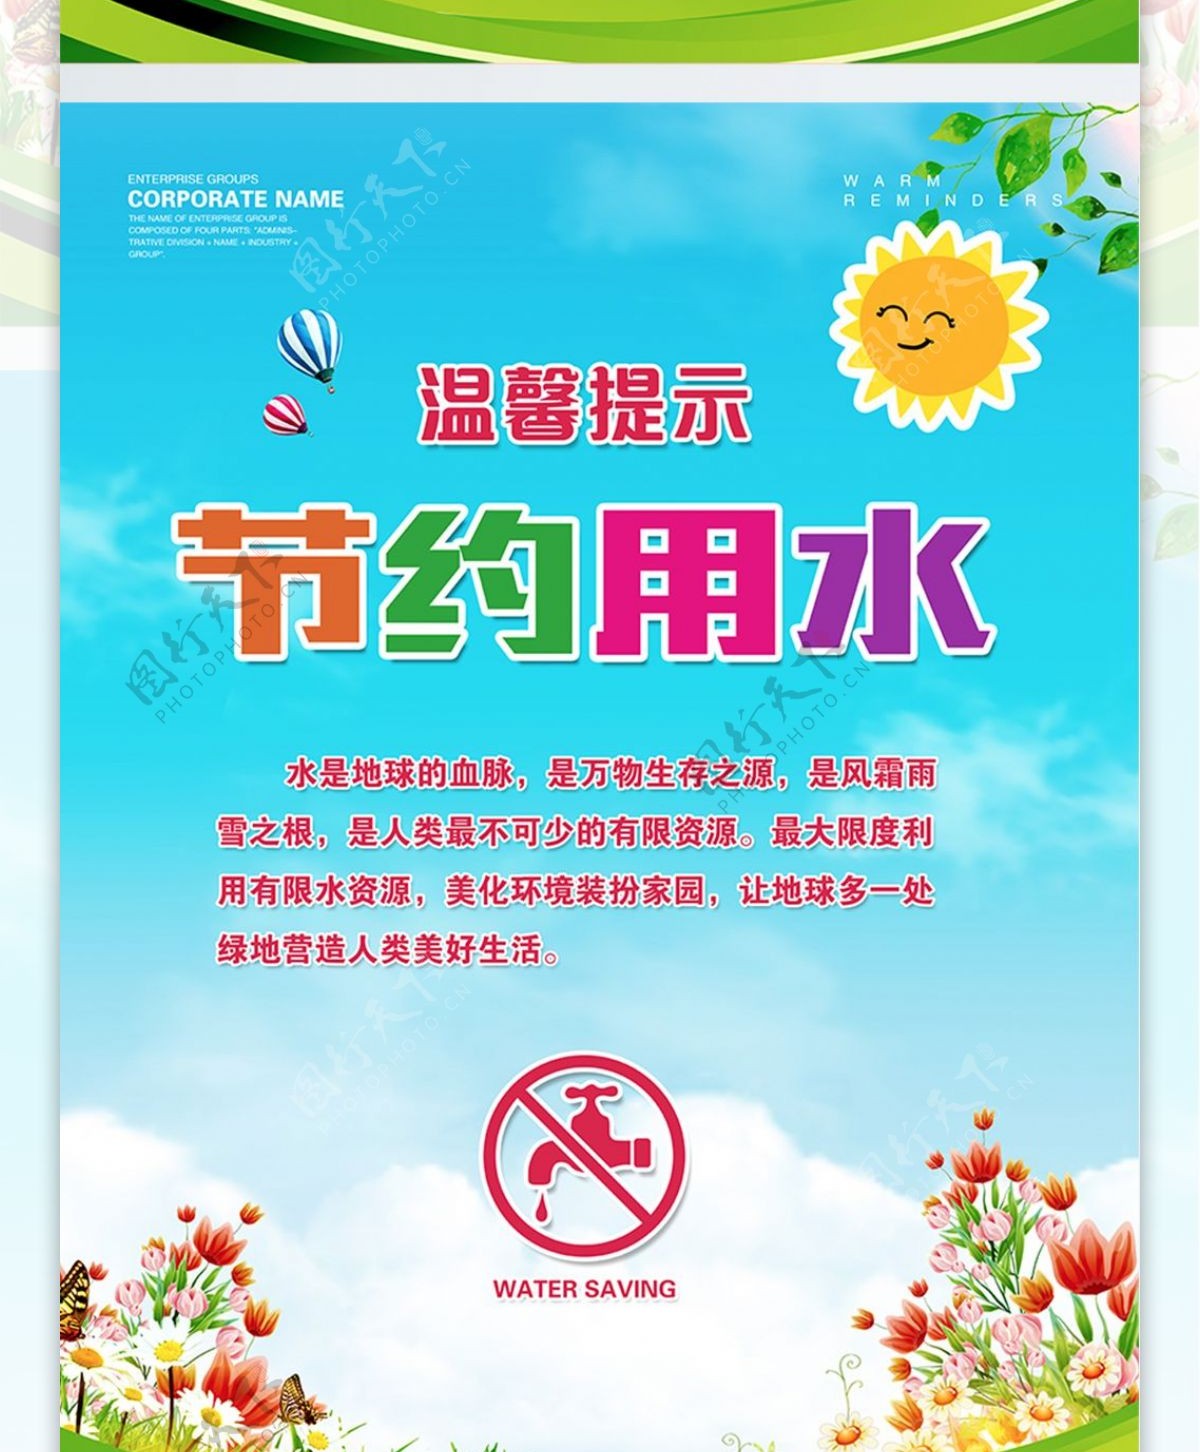 请勿吸烟蓝色风景温馨提示公益展板海报